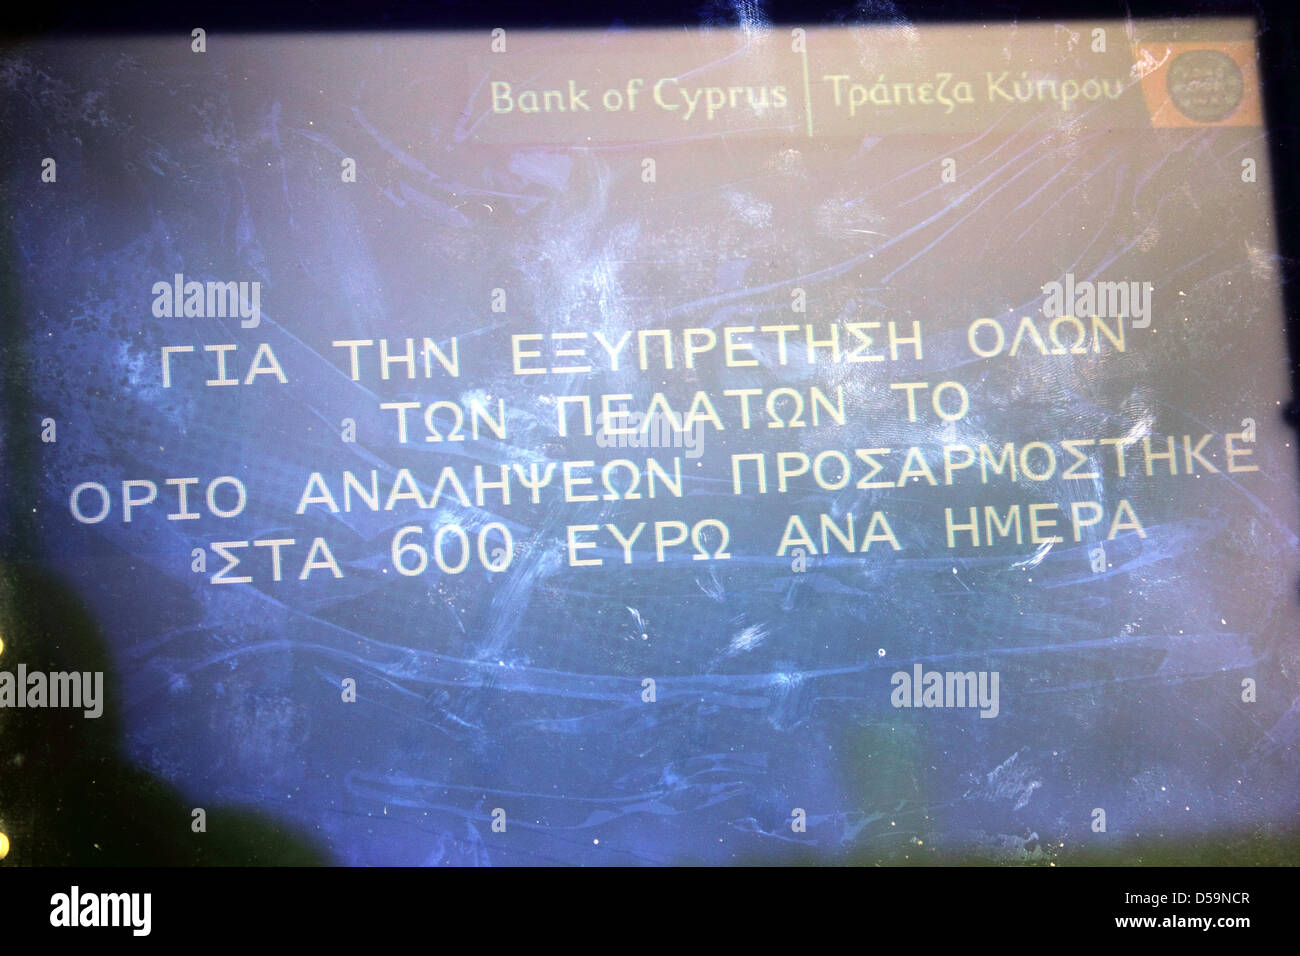 ATM di banca di Cipro ad Atene con franchigia di 600 euro al giorno e account. Foto Stock